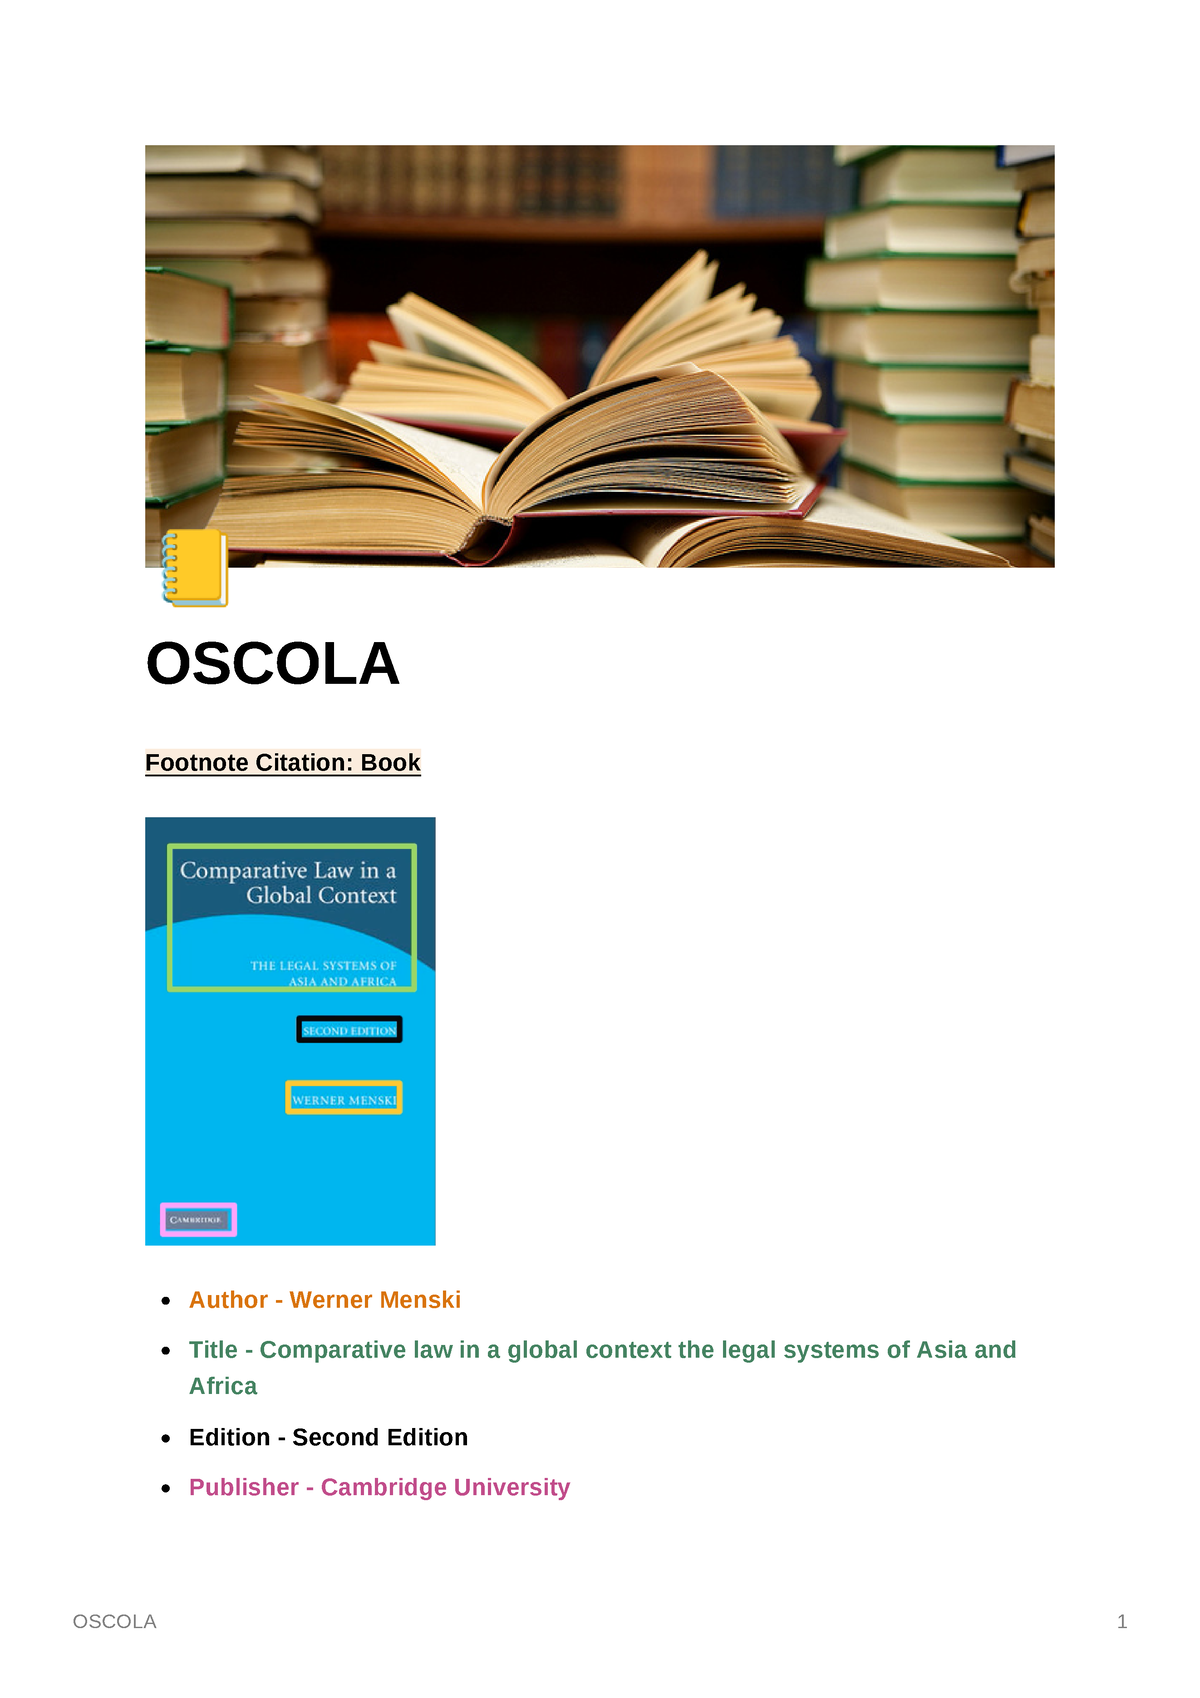 Oscola - notes - À OSCOLA Footnote Citation: Book Author - Werner